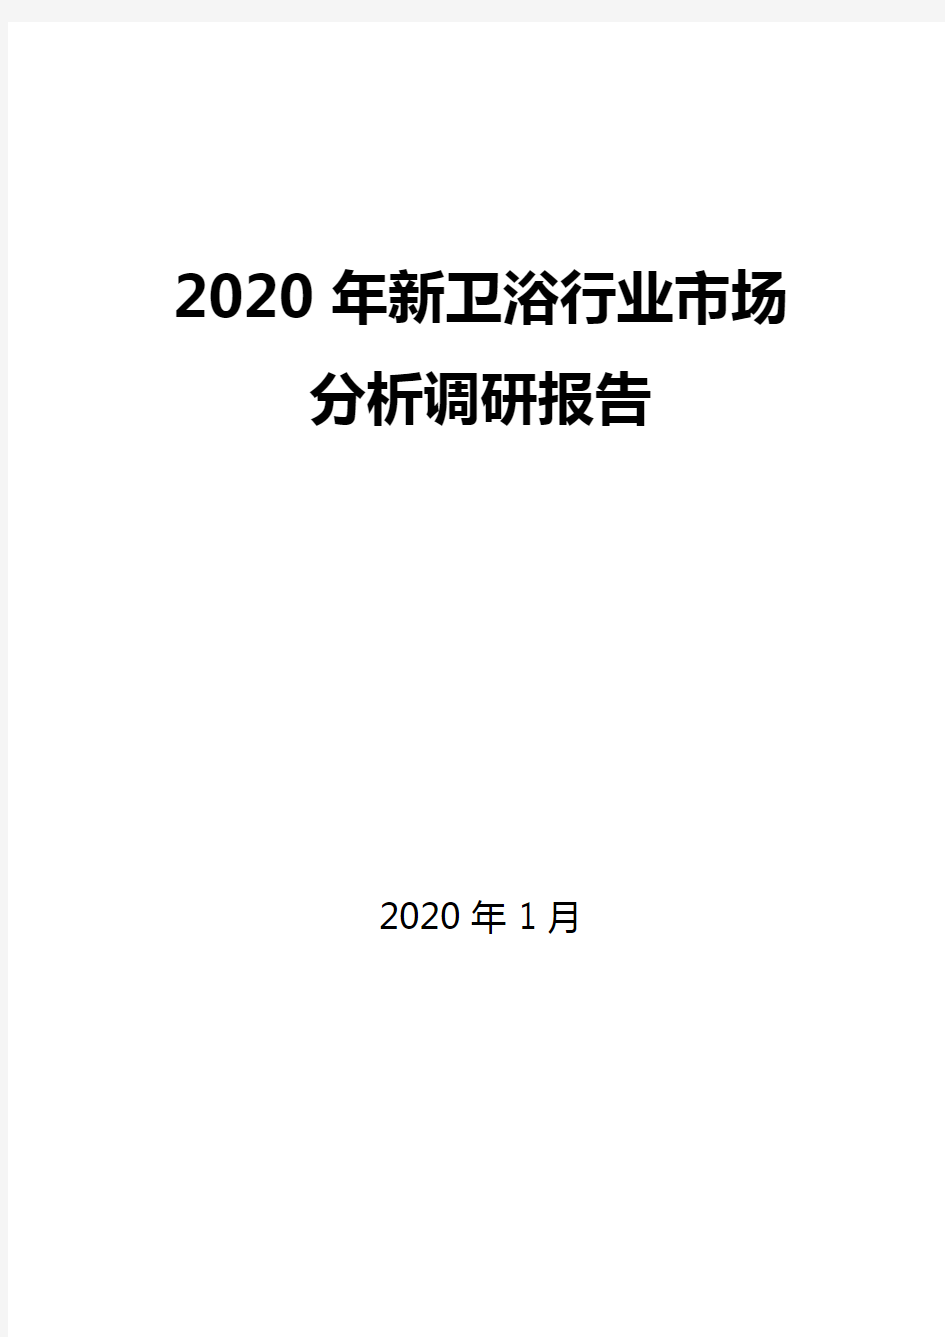 2020年新卫浴行业市场分析调研报告